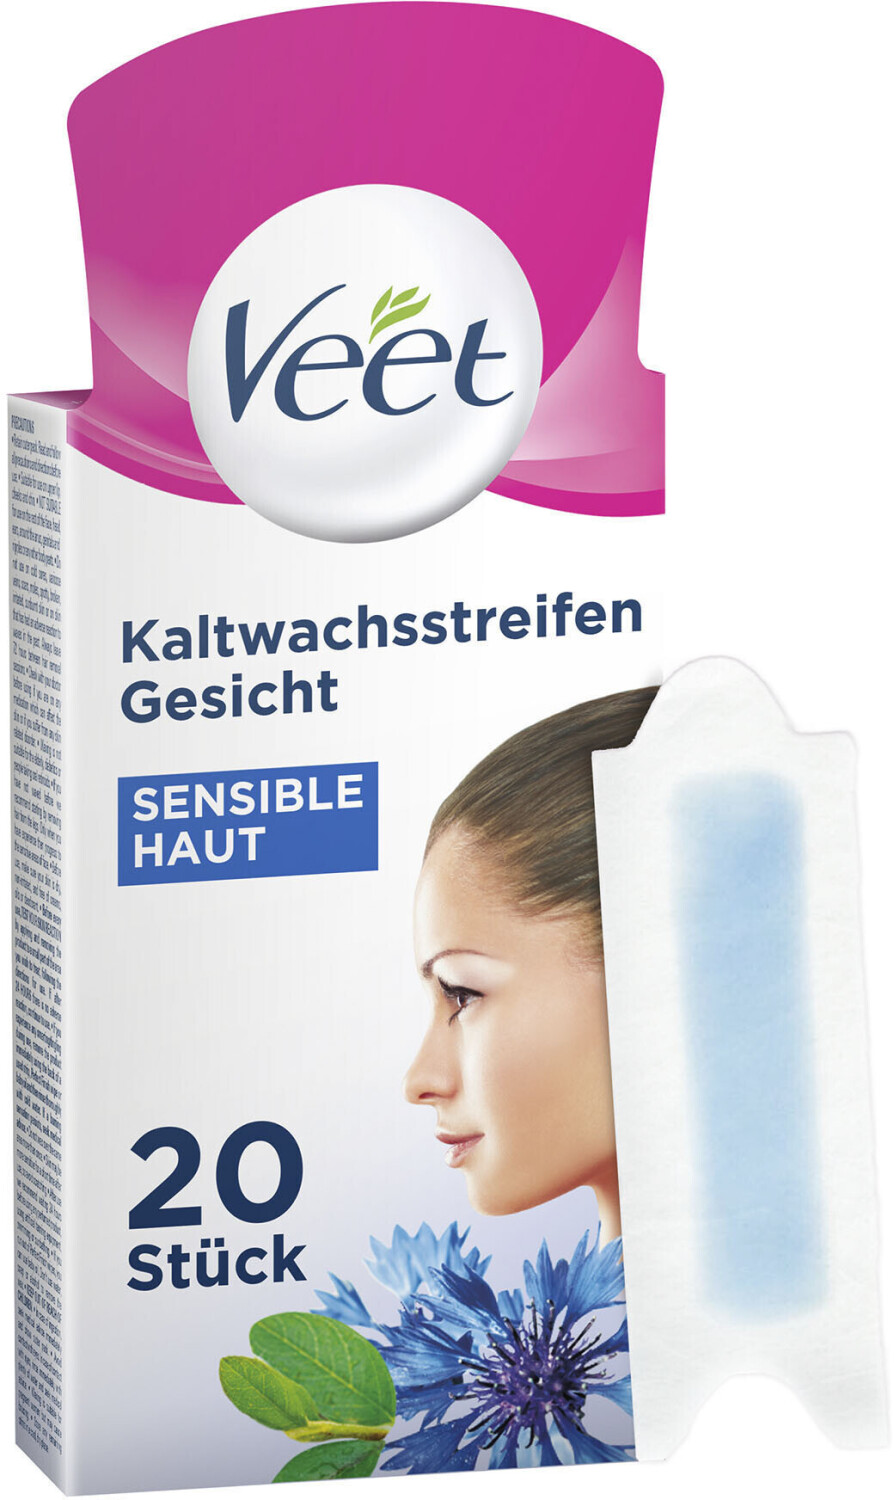 Veet Gesicht | Preisvergleich Easy-Gelwax € ab Präzisionskaltwachsstreifen bei 5,90